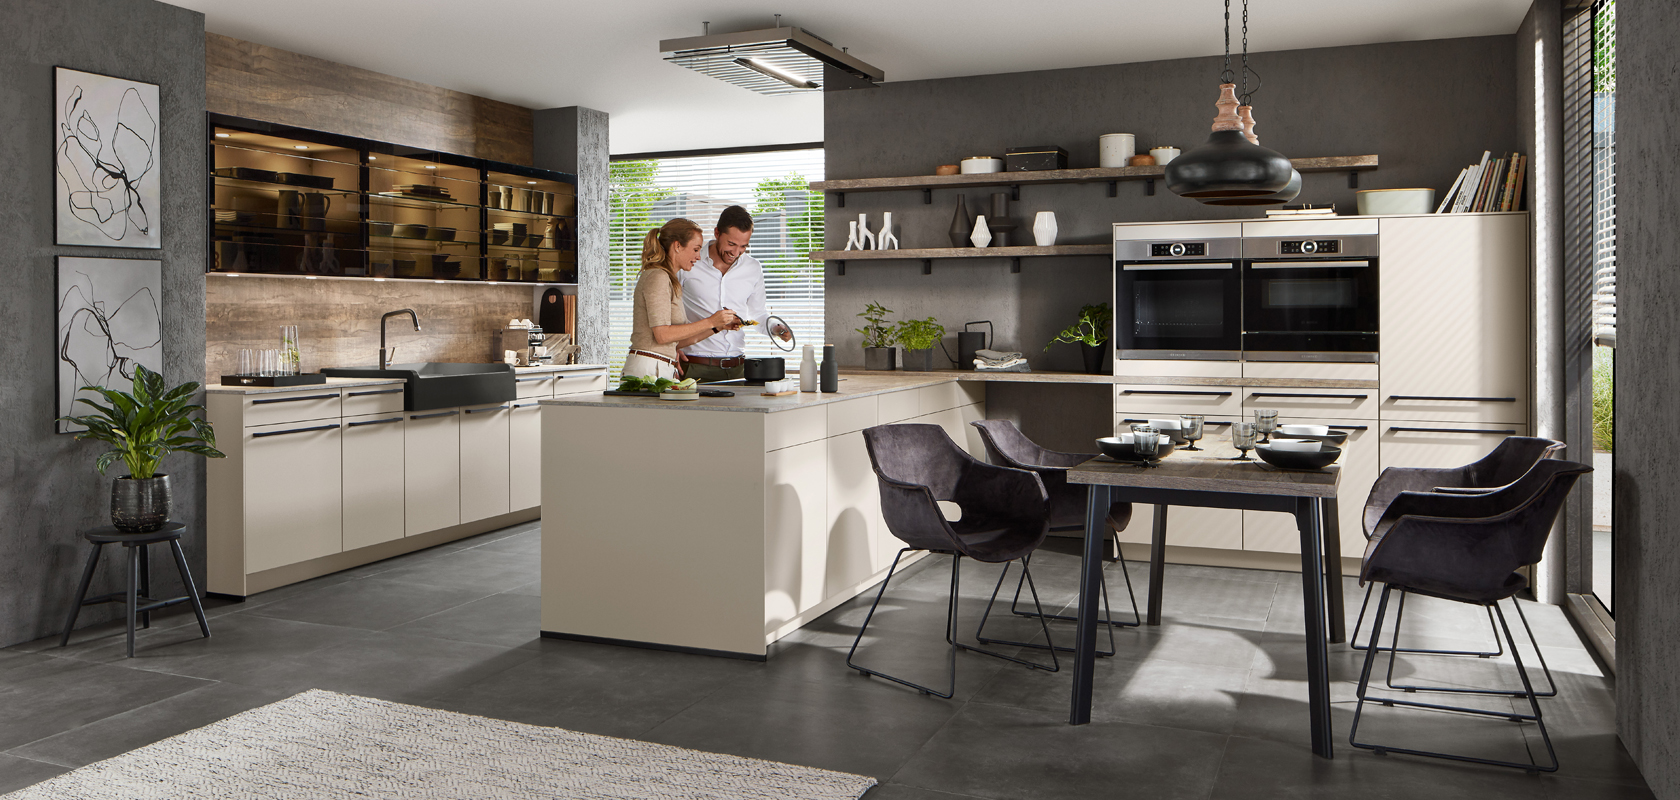 Une cuisine moderne et élégante avec un couple cuisinant ensemble, comprenant des armoires élégantes, des appareils en acier inoxydable et un coin repas confortable avec des plantes en pot.